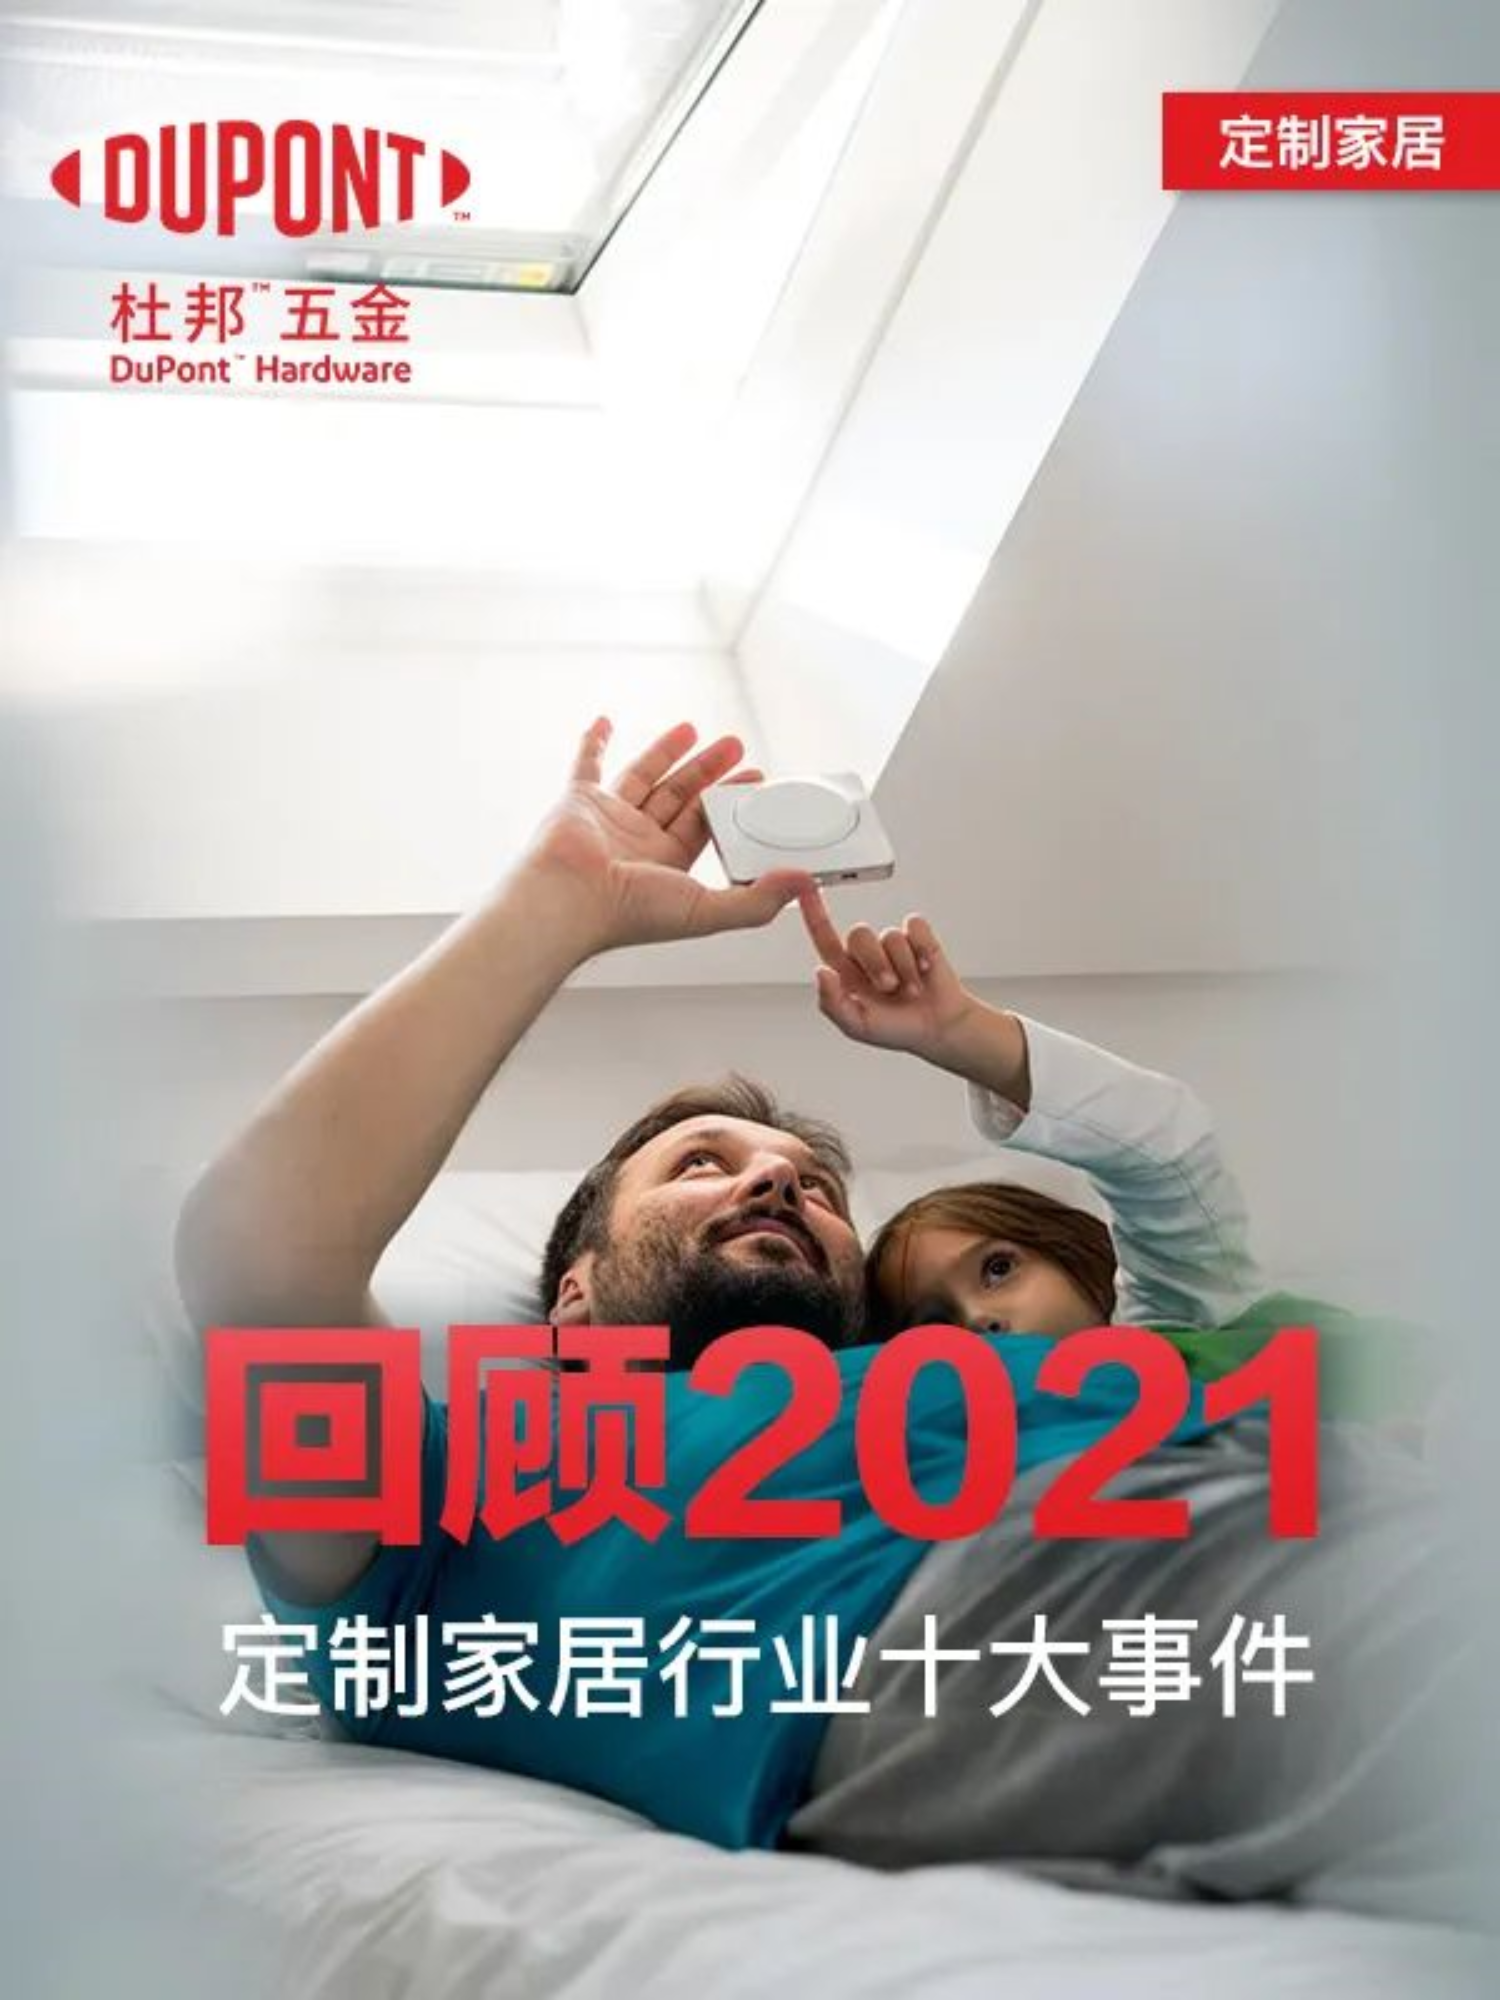 סקירה של 10 ריהוט הבית המותאמים אישית המובילים בסין בשנת 2021!